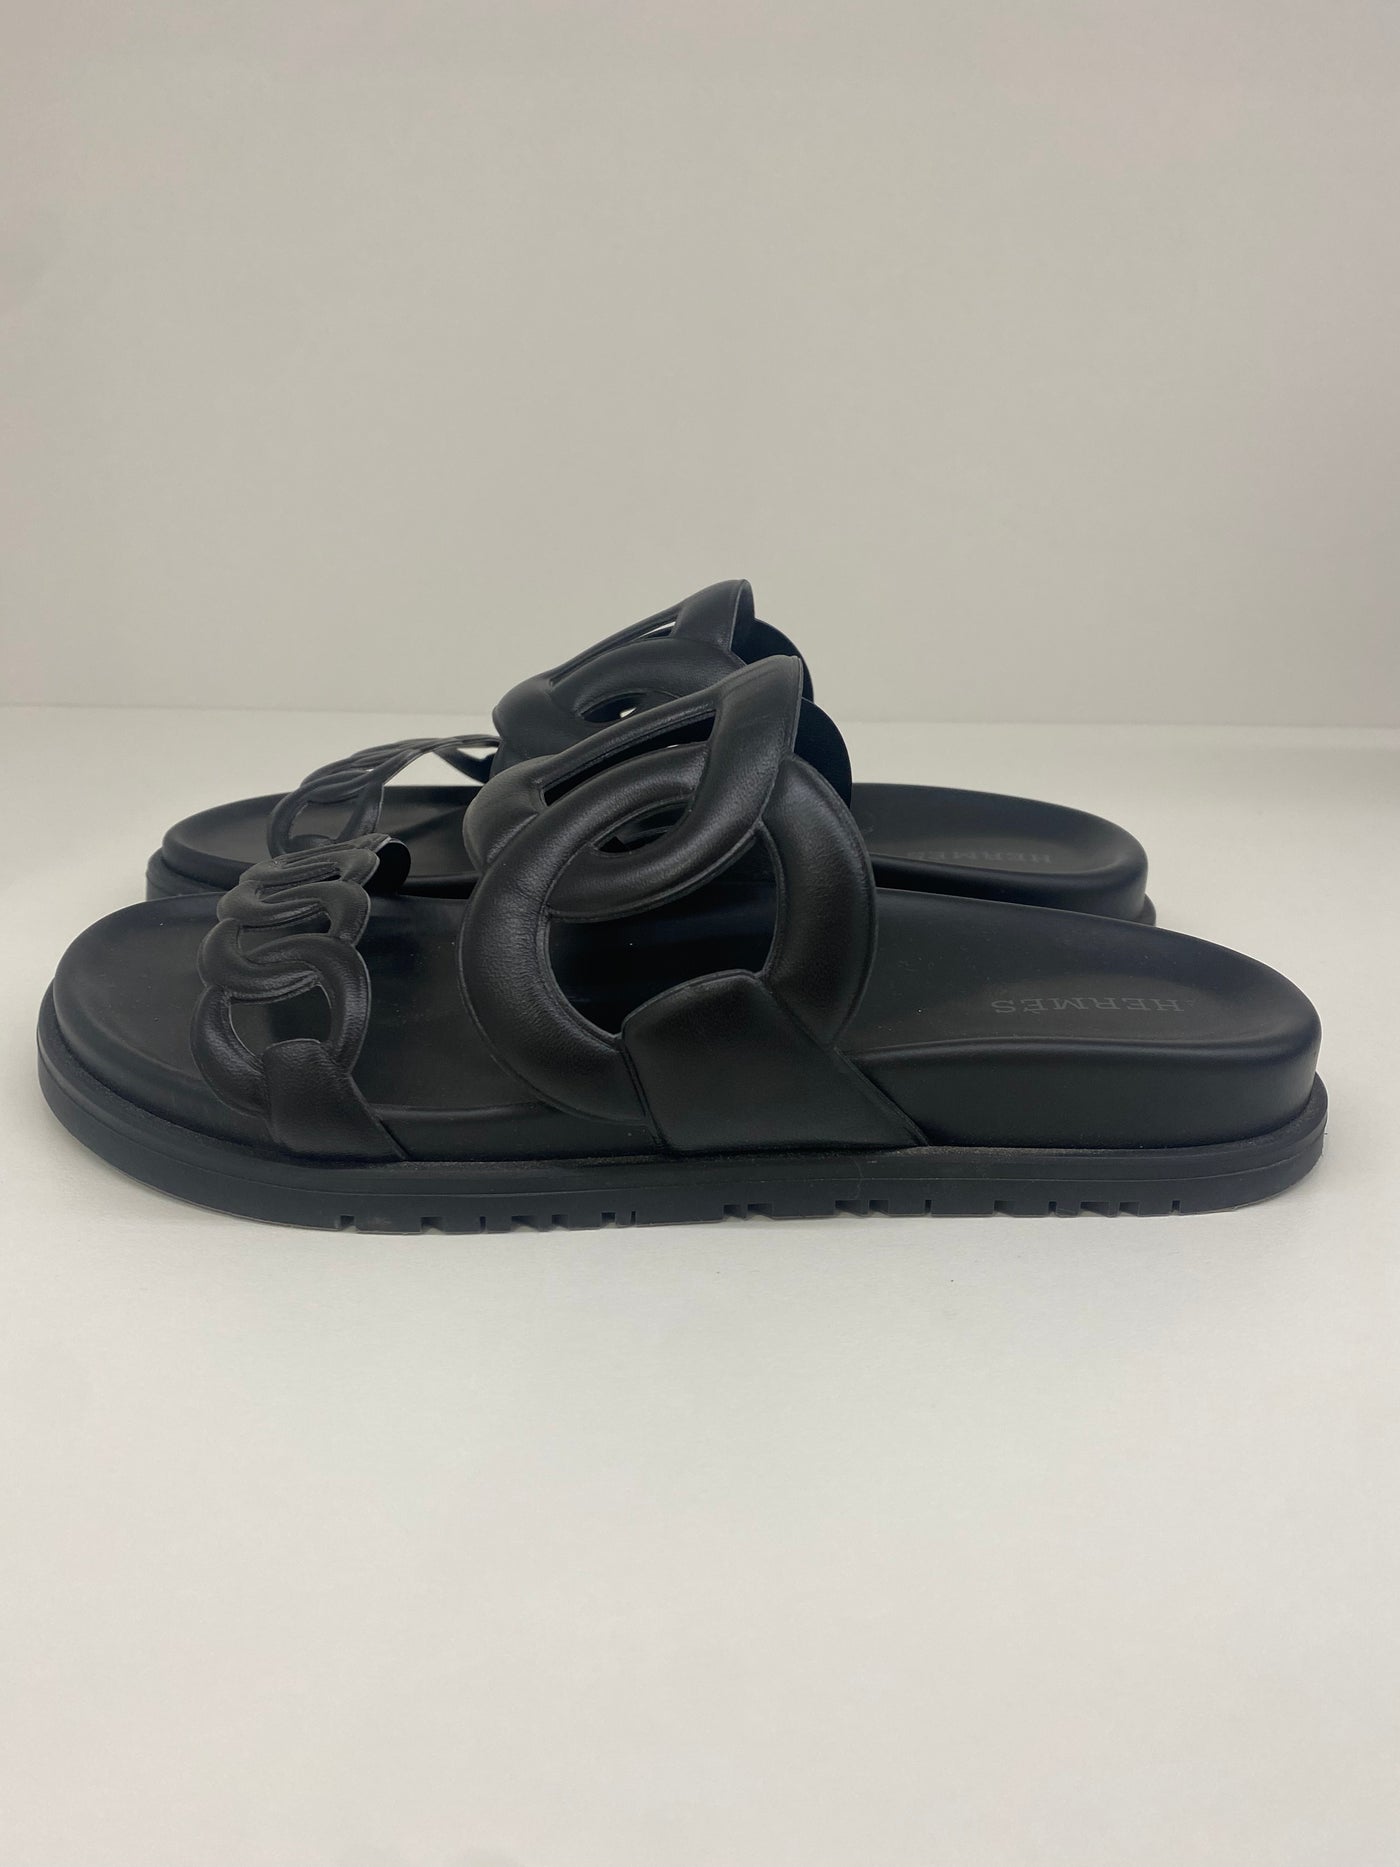 Hermes Extra Sandals Black - Size 37